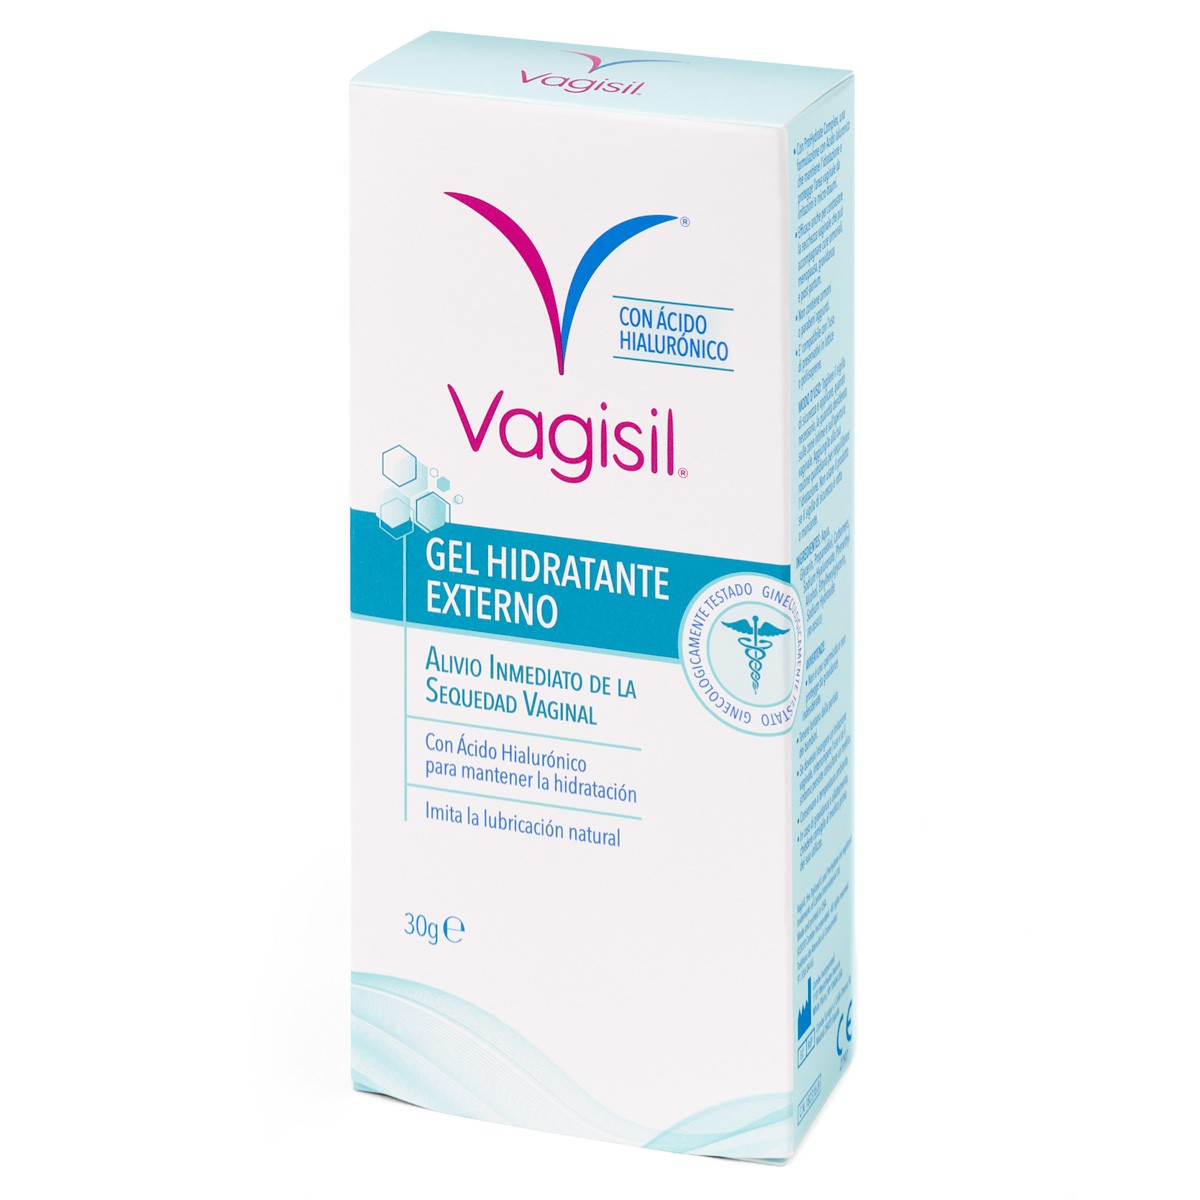 Imagen de Vagisil gel hidratante externo 30g